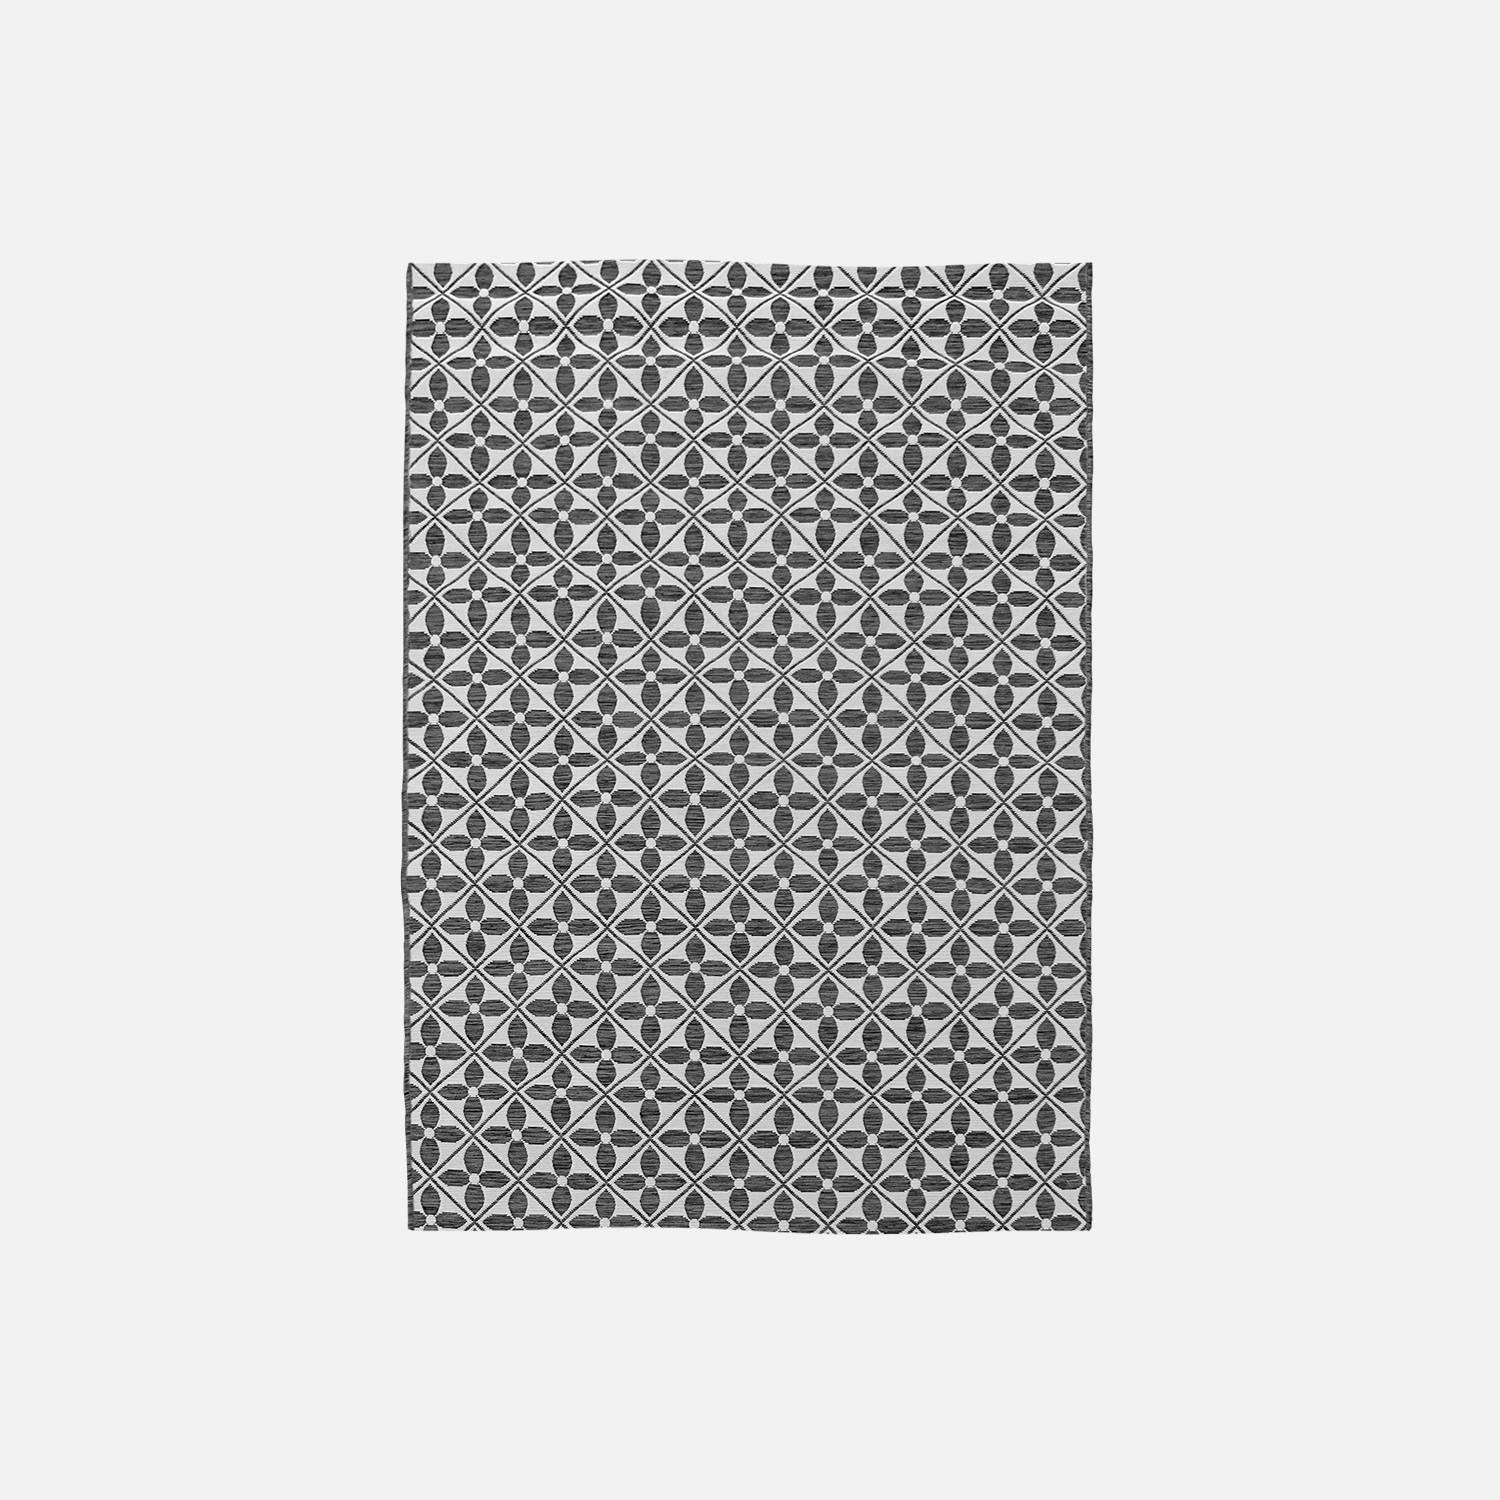 Tapis extérieur/intérieur 160 X 230 cm densité 1,15 kg/m2, motif carreaux de ciment, traité anti UV, toutes saisons Photo3